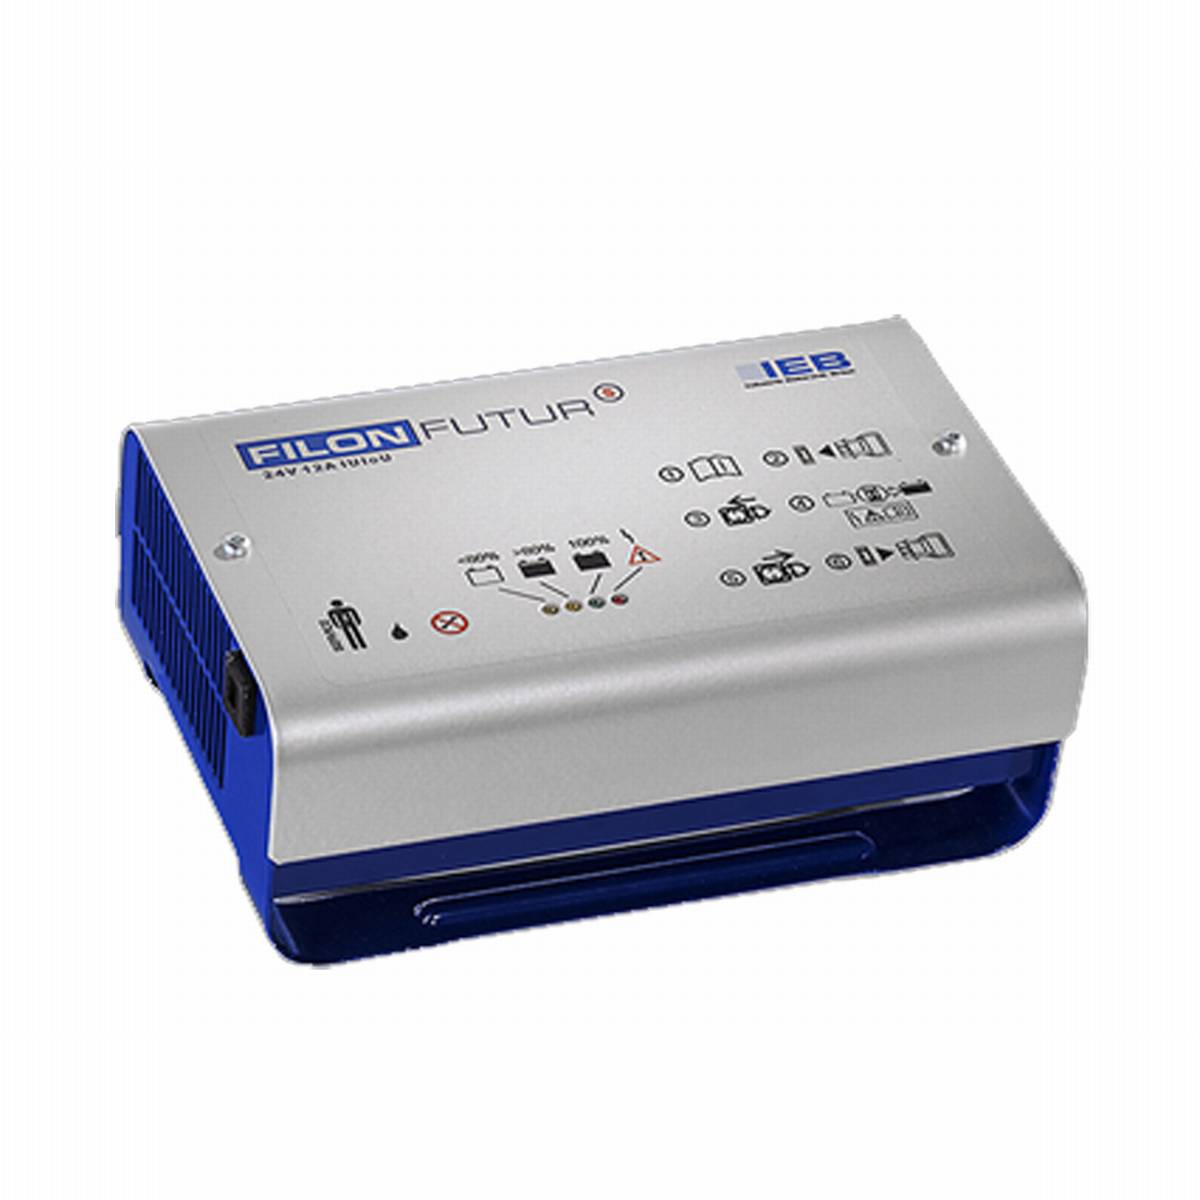 IEB Filon Futur S E230 G24/15 B65-FP (rete AC) per batterie al piombo 24V 15A corrente di carica ad alta frequenza